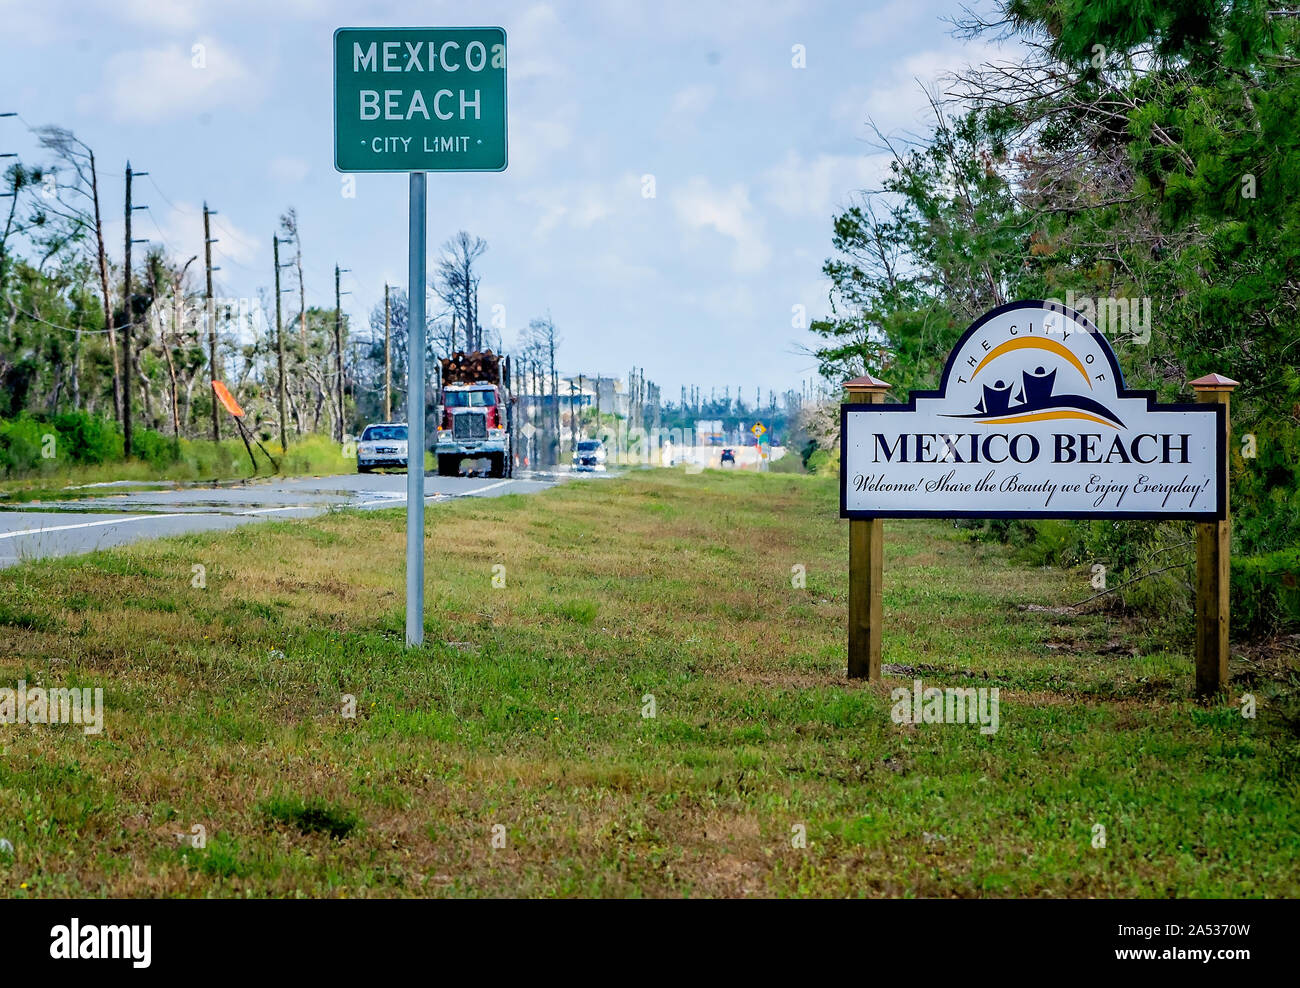 Un panneau indicateur de la ville et bienvenue affiche accueille pilotes que le Mexique plage, 5 octobre 2019, au Mexique, en Floride. Banque D'Images